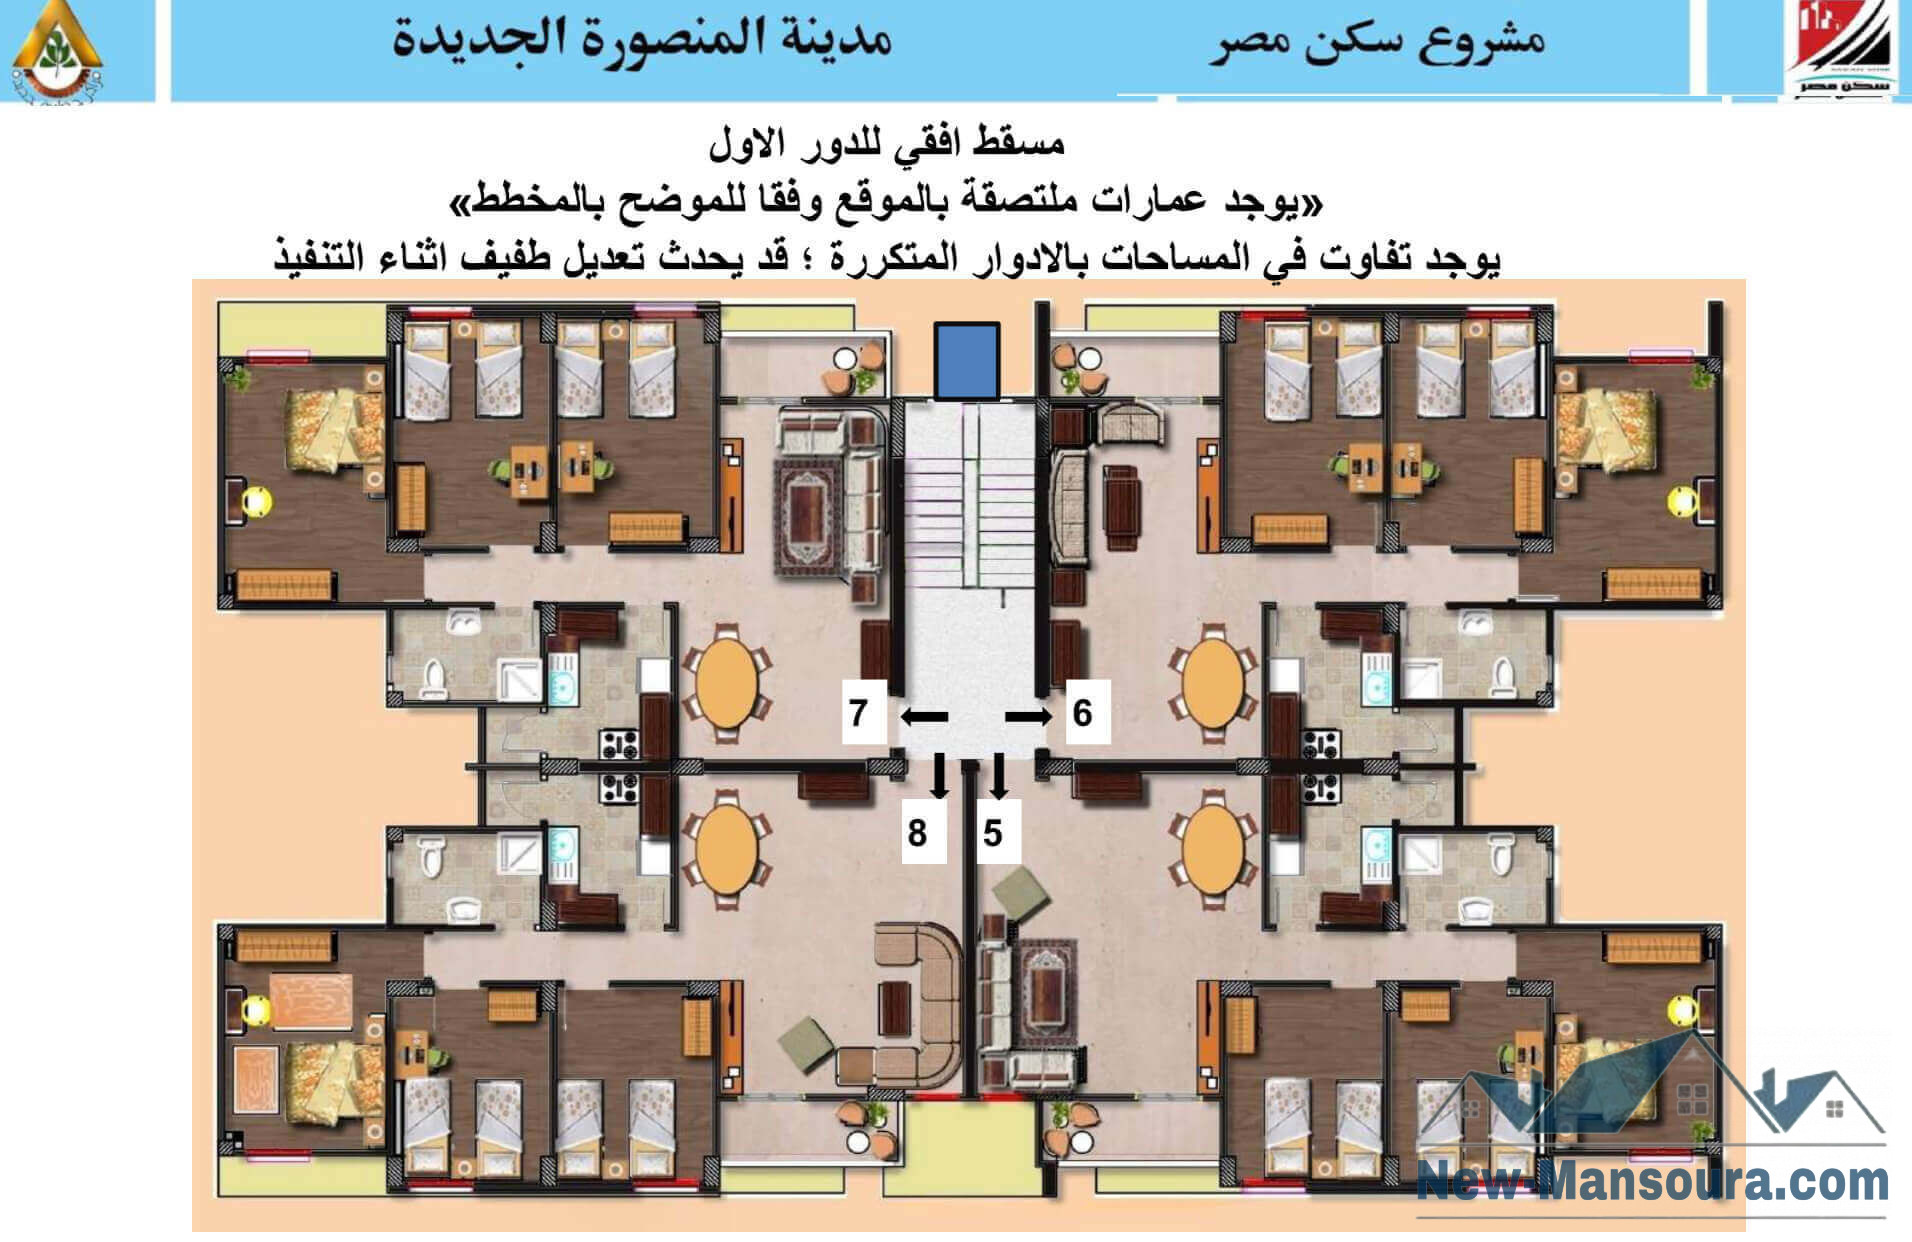 مشروع سكن مصر المنصورة الجديدة بأول مدينة جيل رابع بالدلتا